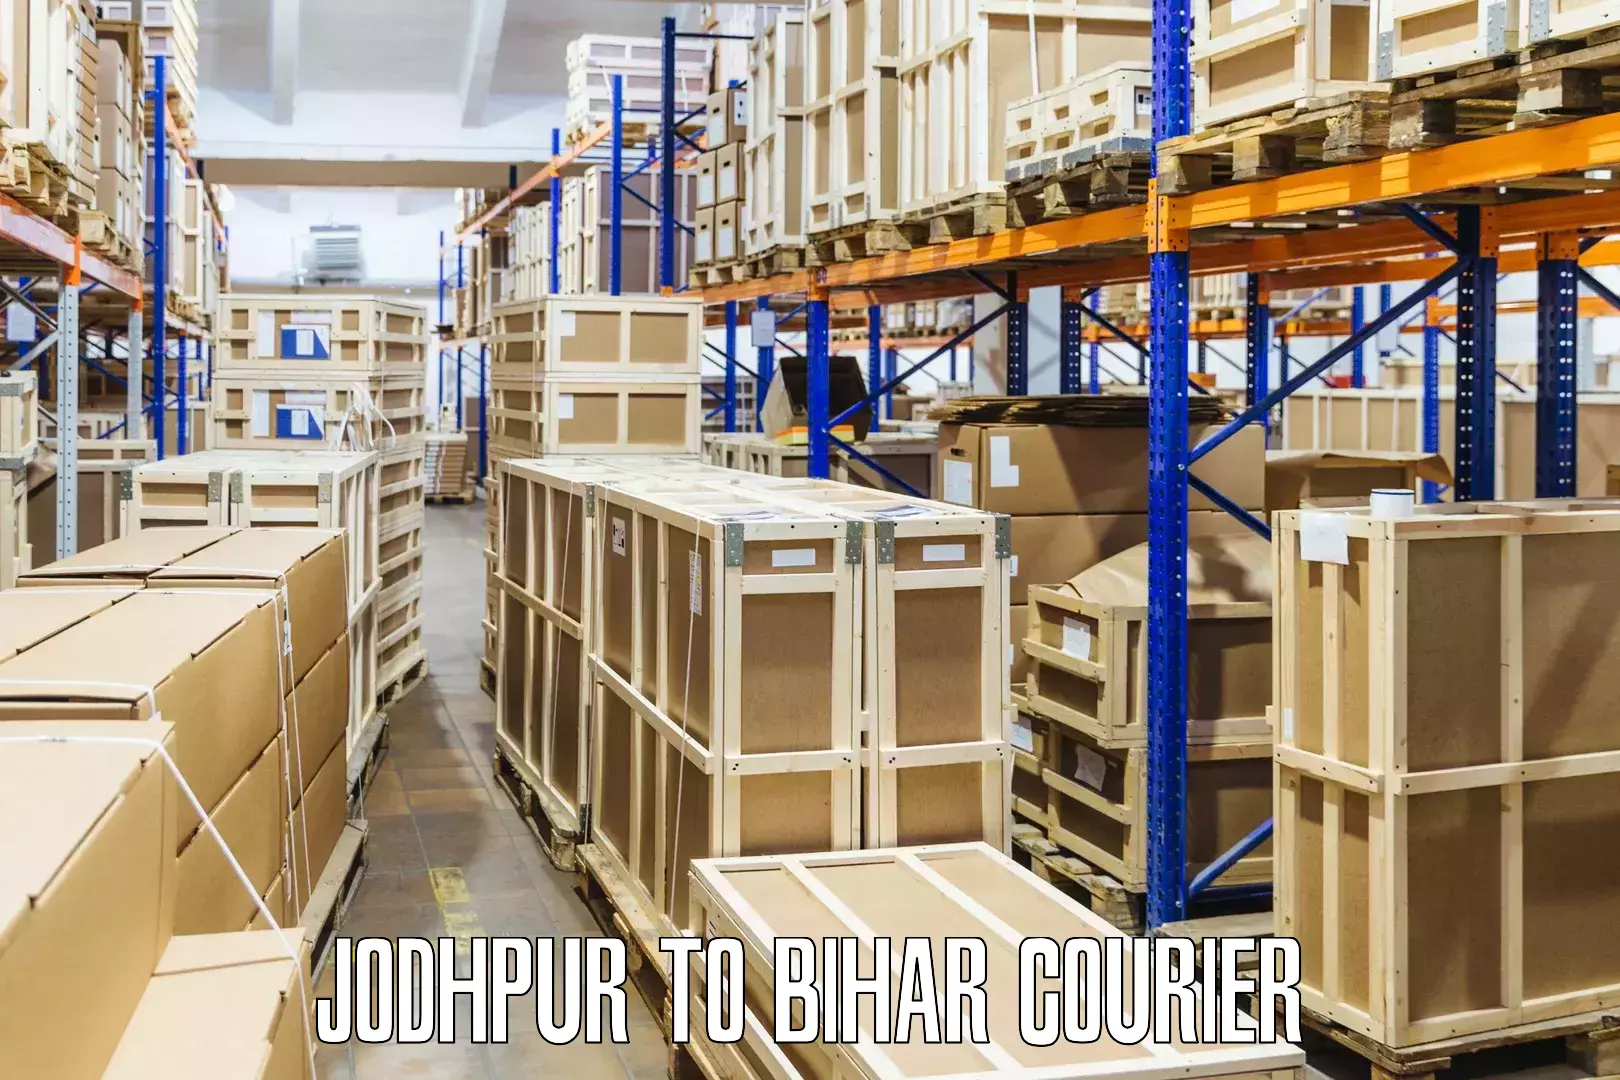 Premium courier services Jodhpur to Hasanpura